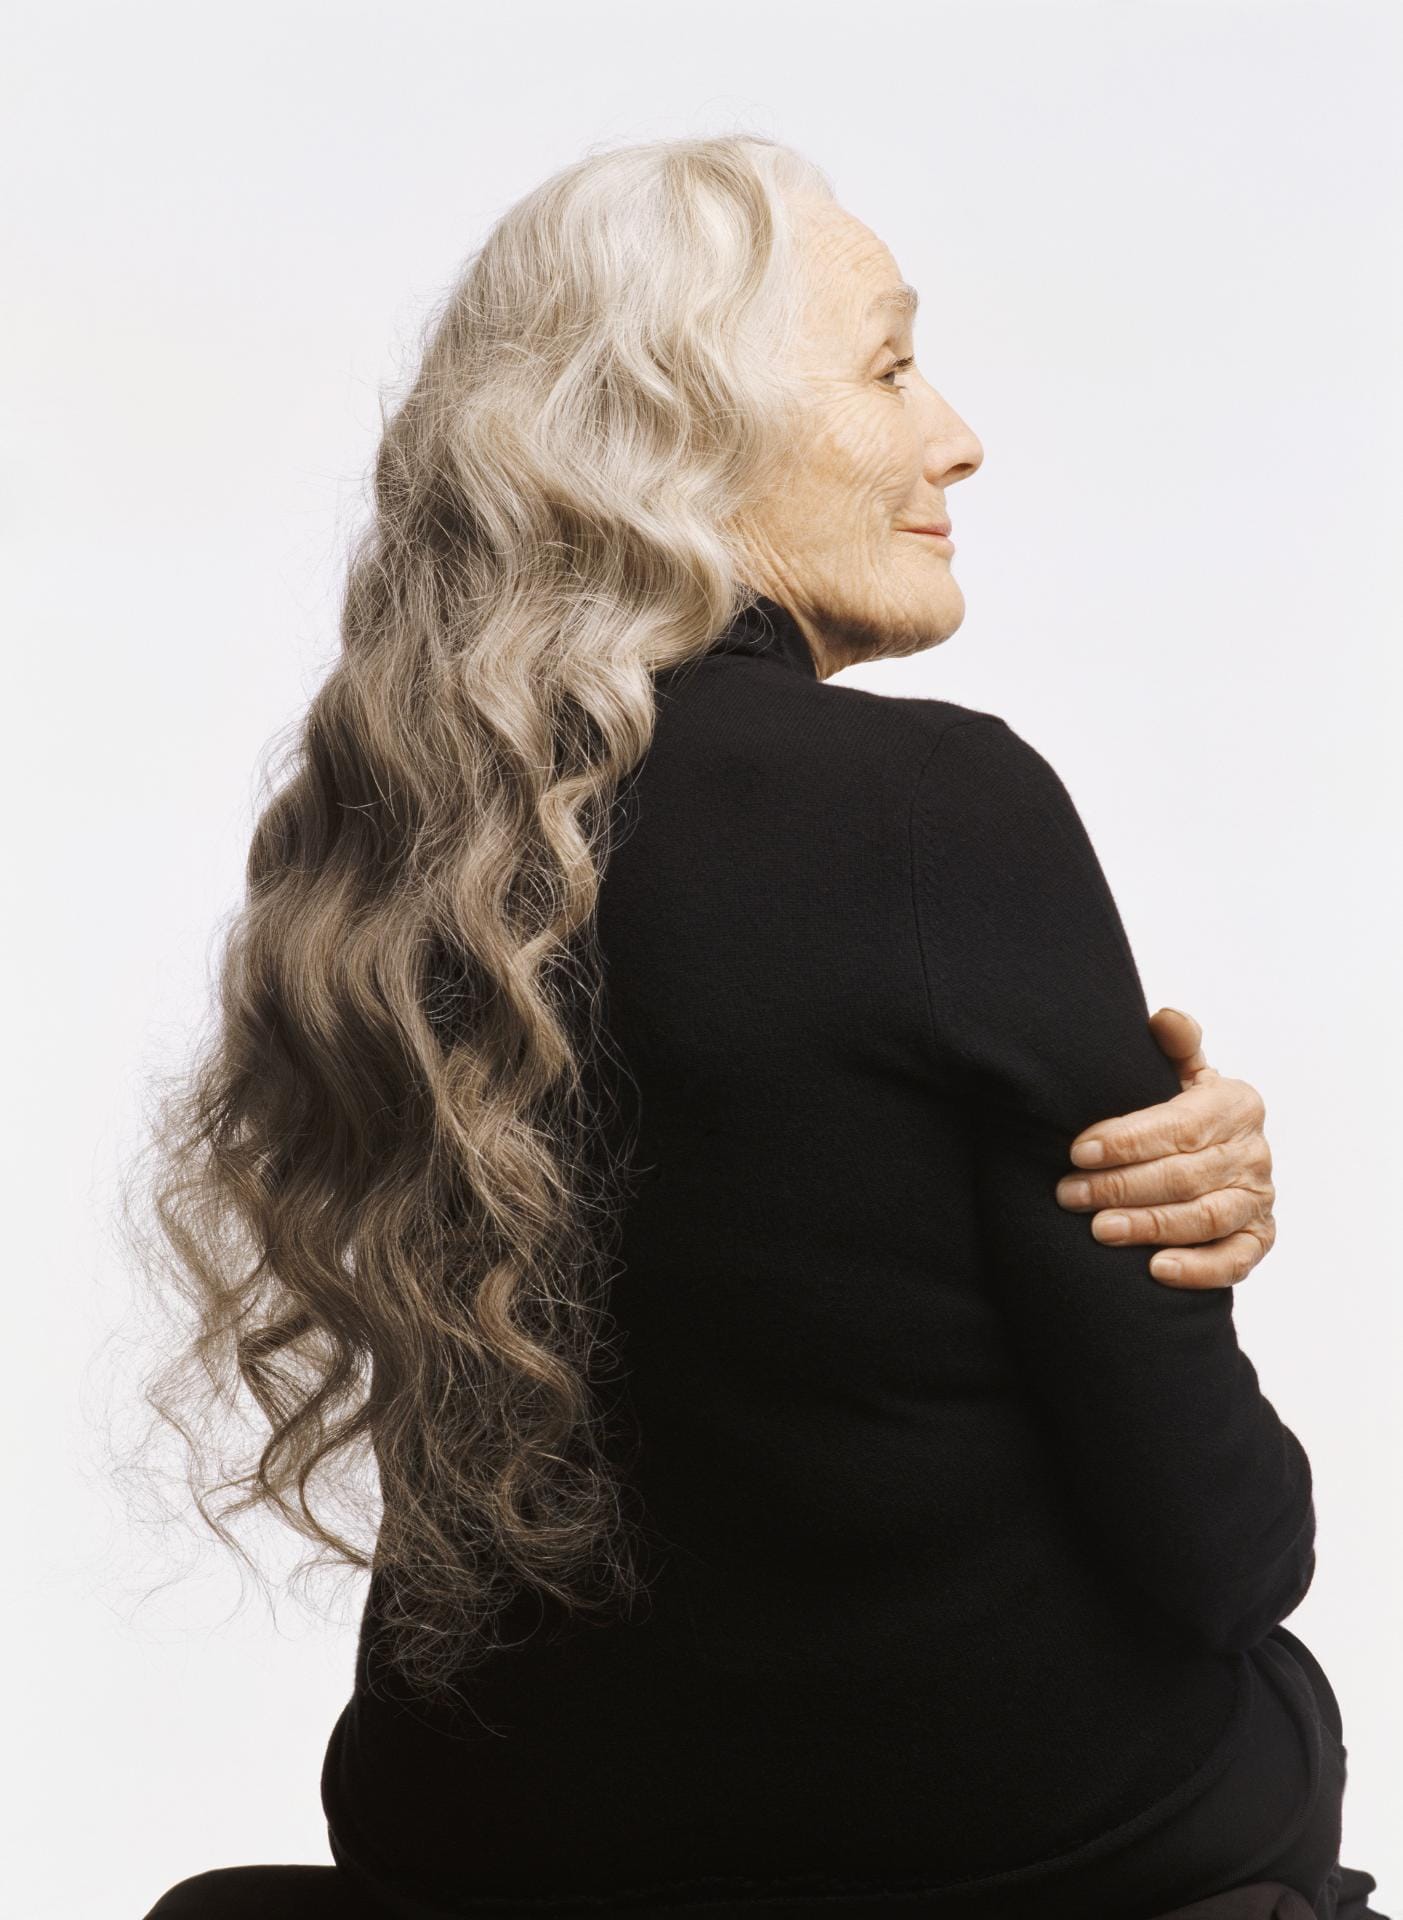 Lange, gelockte Haare stehen nicht nur jungen Frauen. Wichtig ist, der Frisur im reifen Alter einen modernen Touch zu verleihen, wie mit einer Färbung im Hombré-Stil.